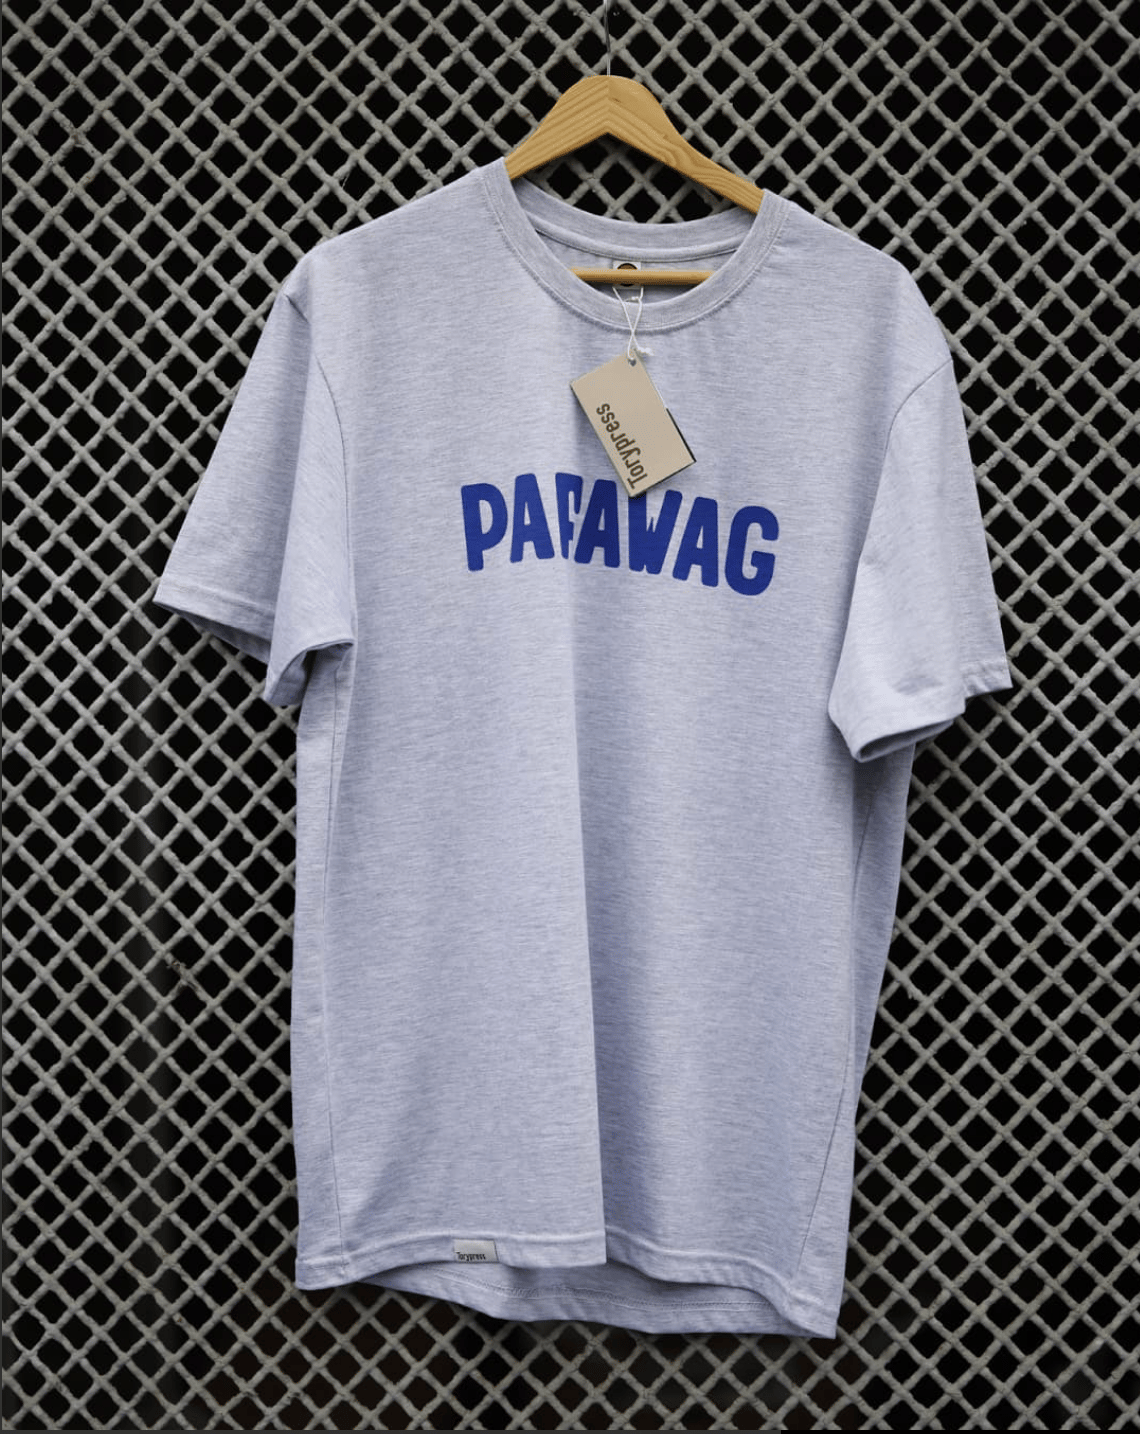  Pafawag Sport T-shirt